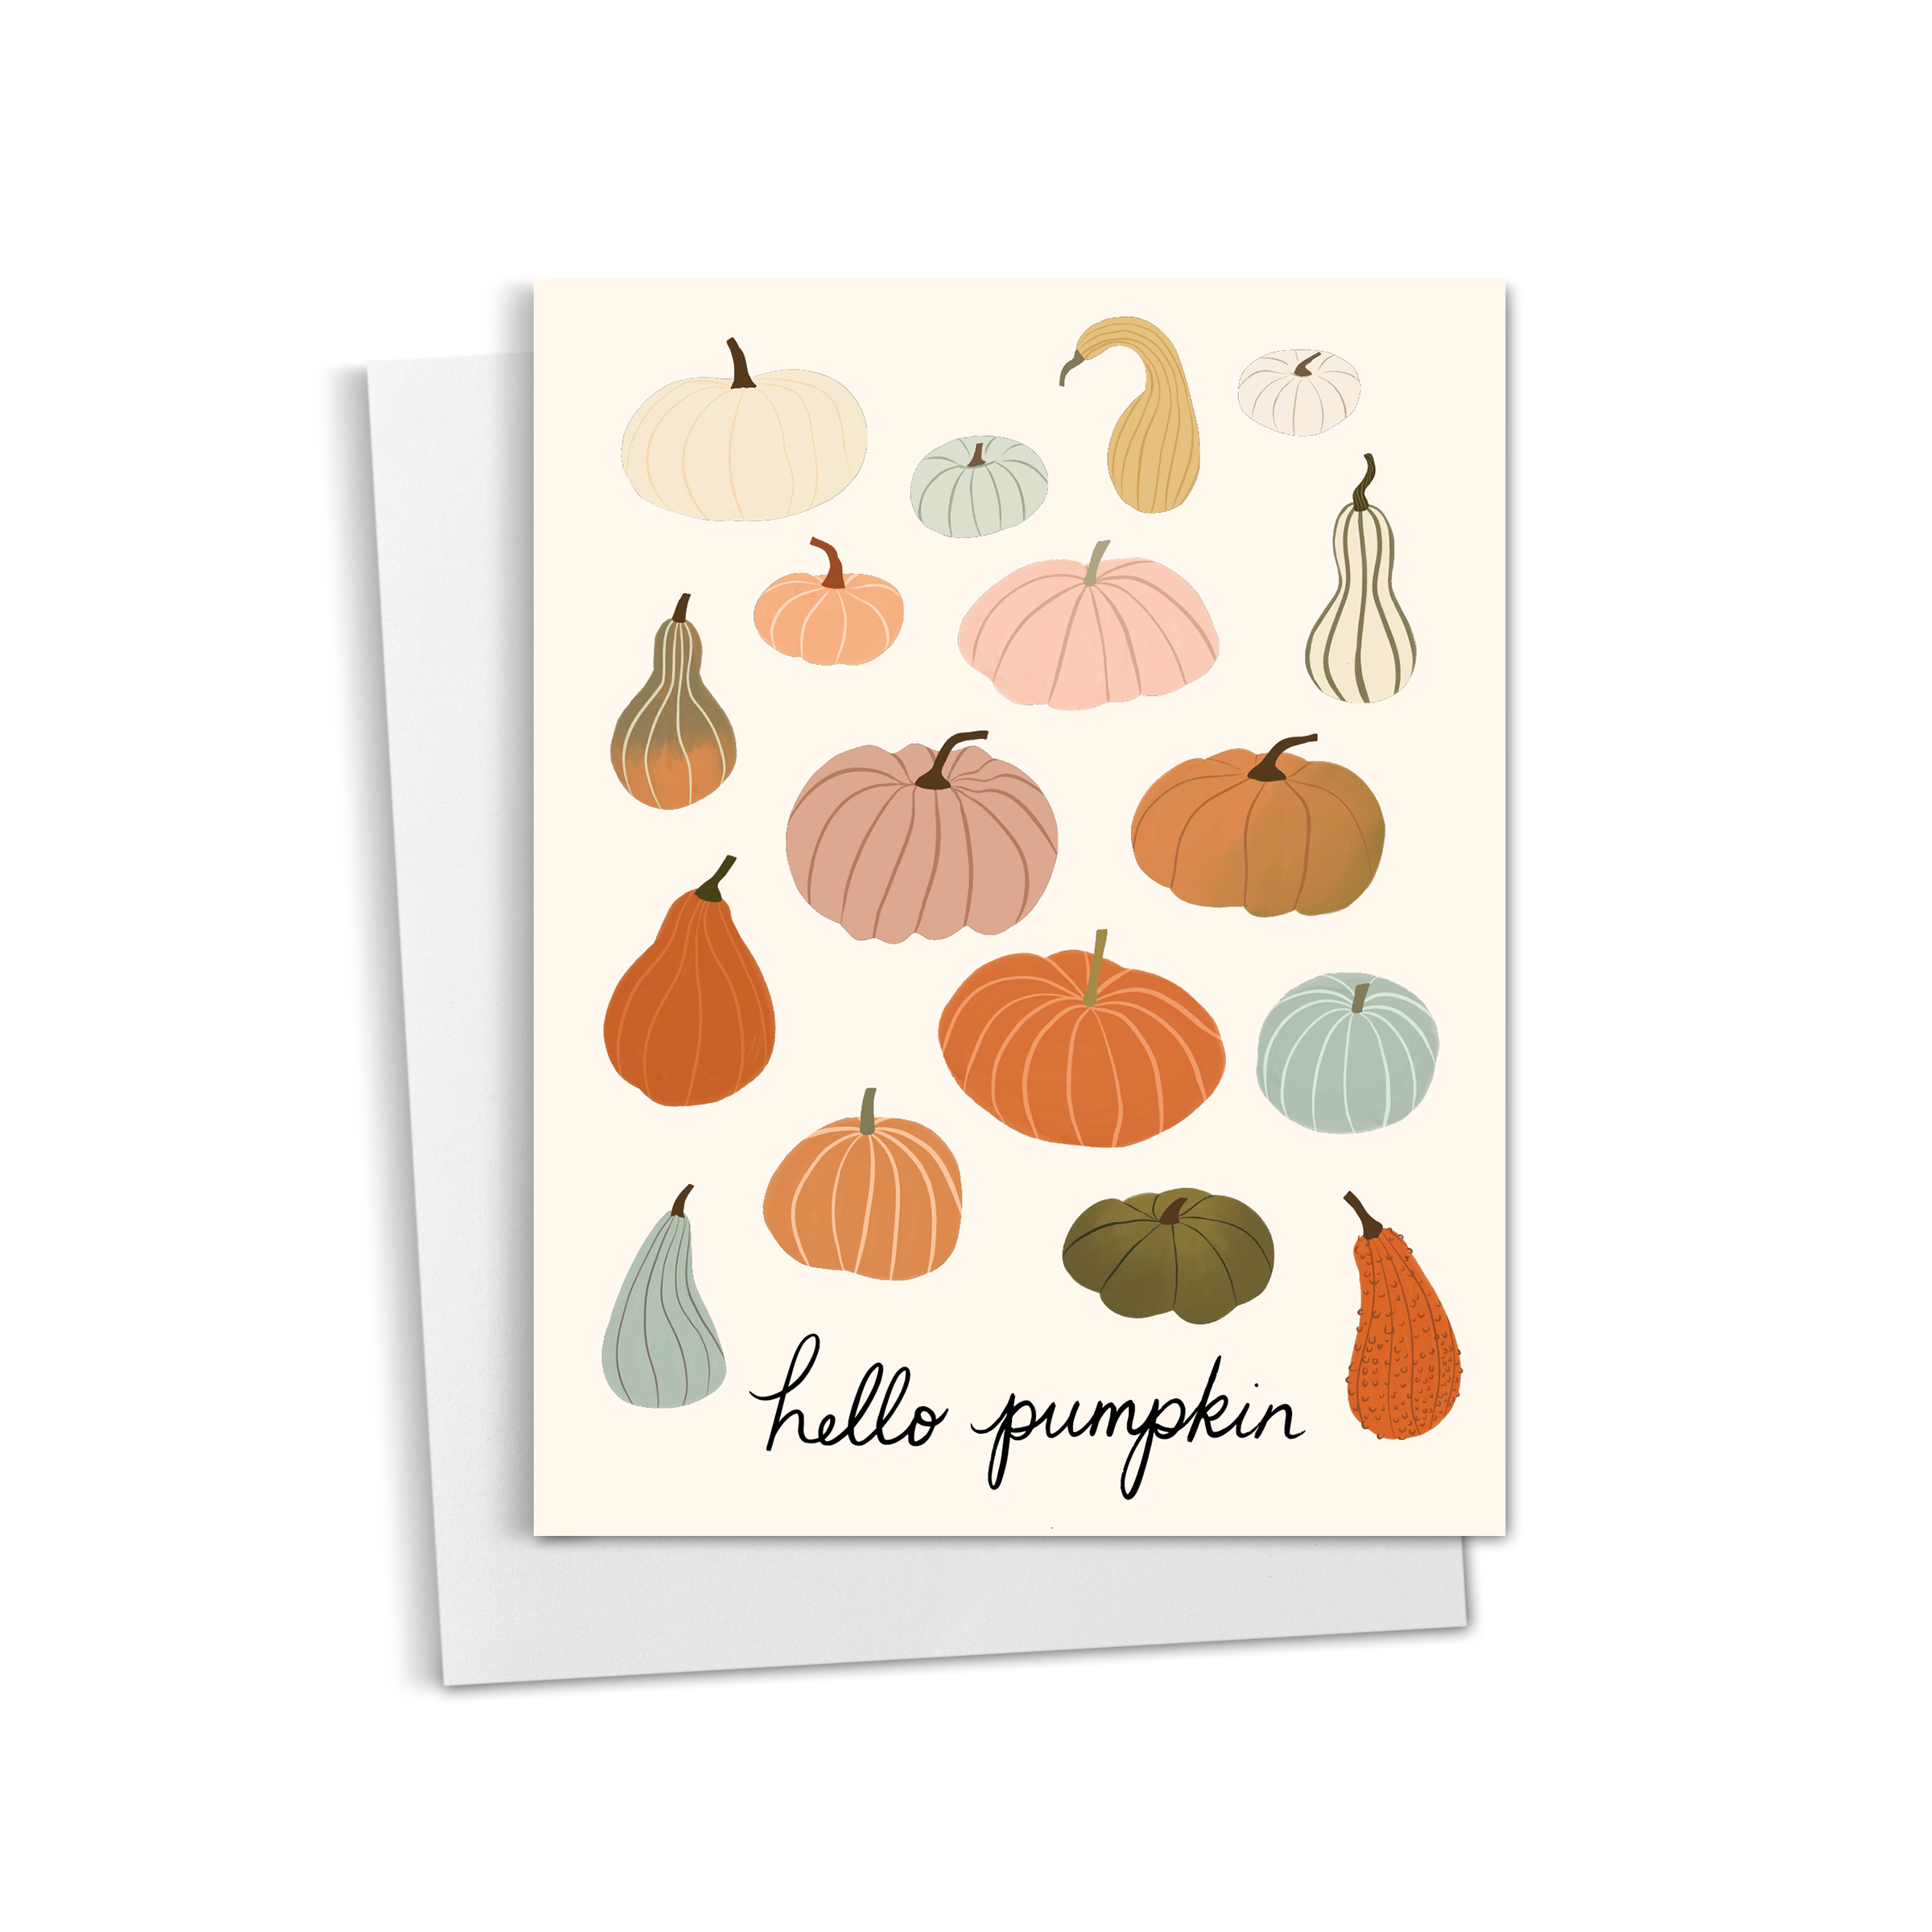 Hello Pumpkin Greeting Card